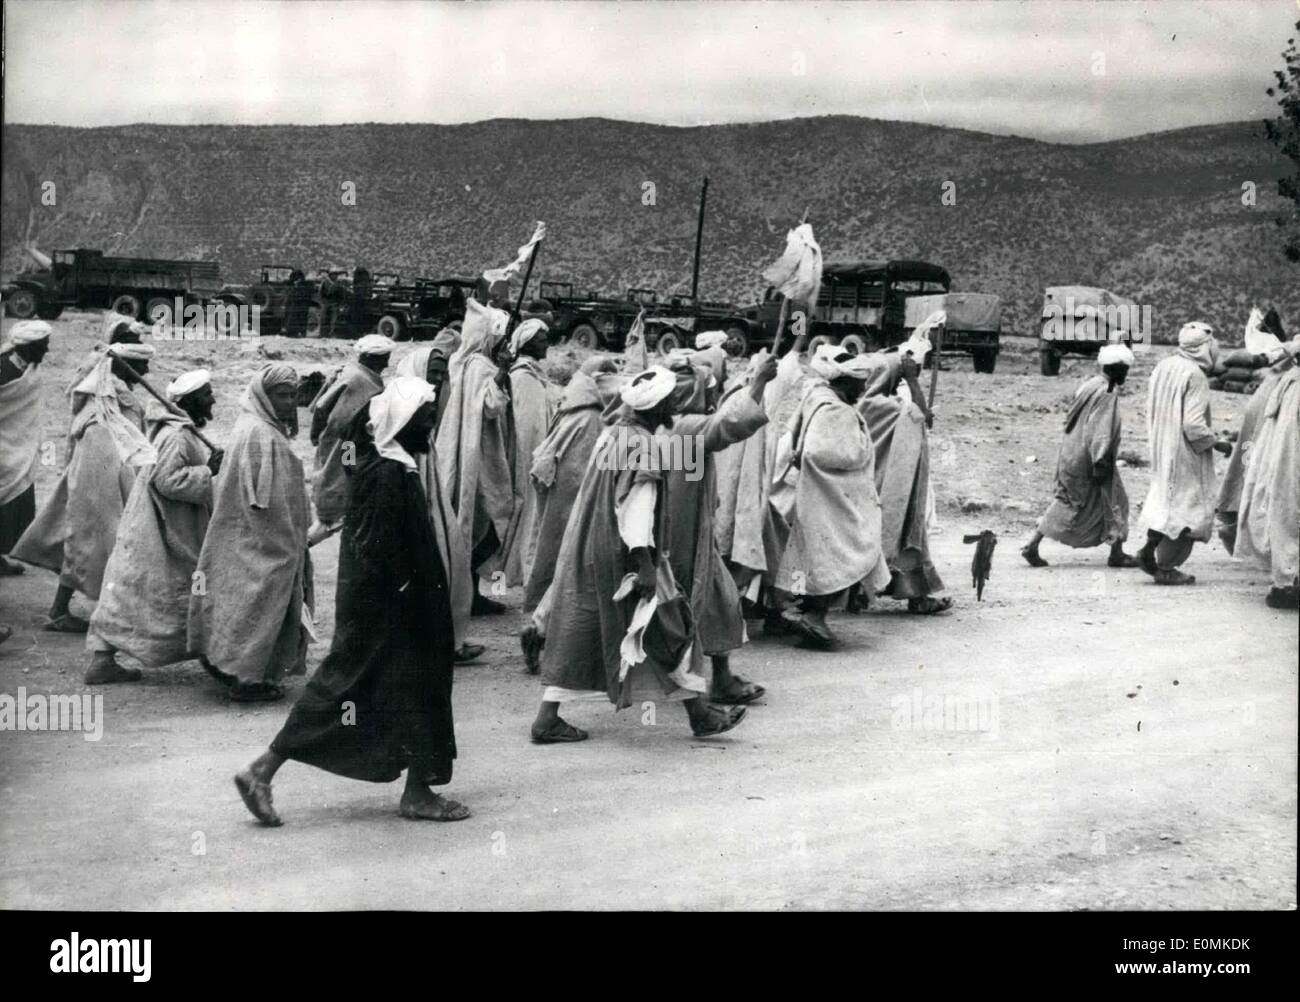 10 octobre 1955 - Maroc : Berbère : autochtones exerçant son drapeau blanc remise après 48 heures d'une révolte dans la région de Immouzer Des Mamoucha. Banque D'Images